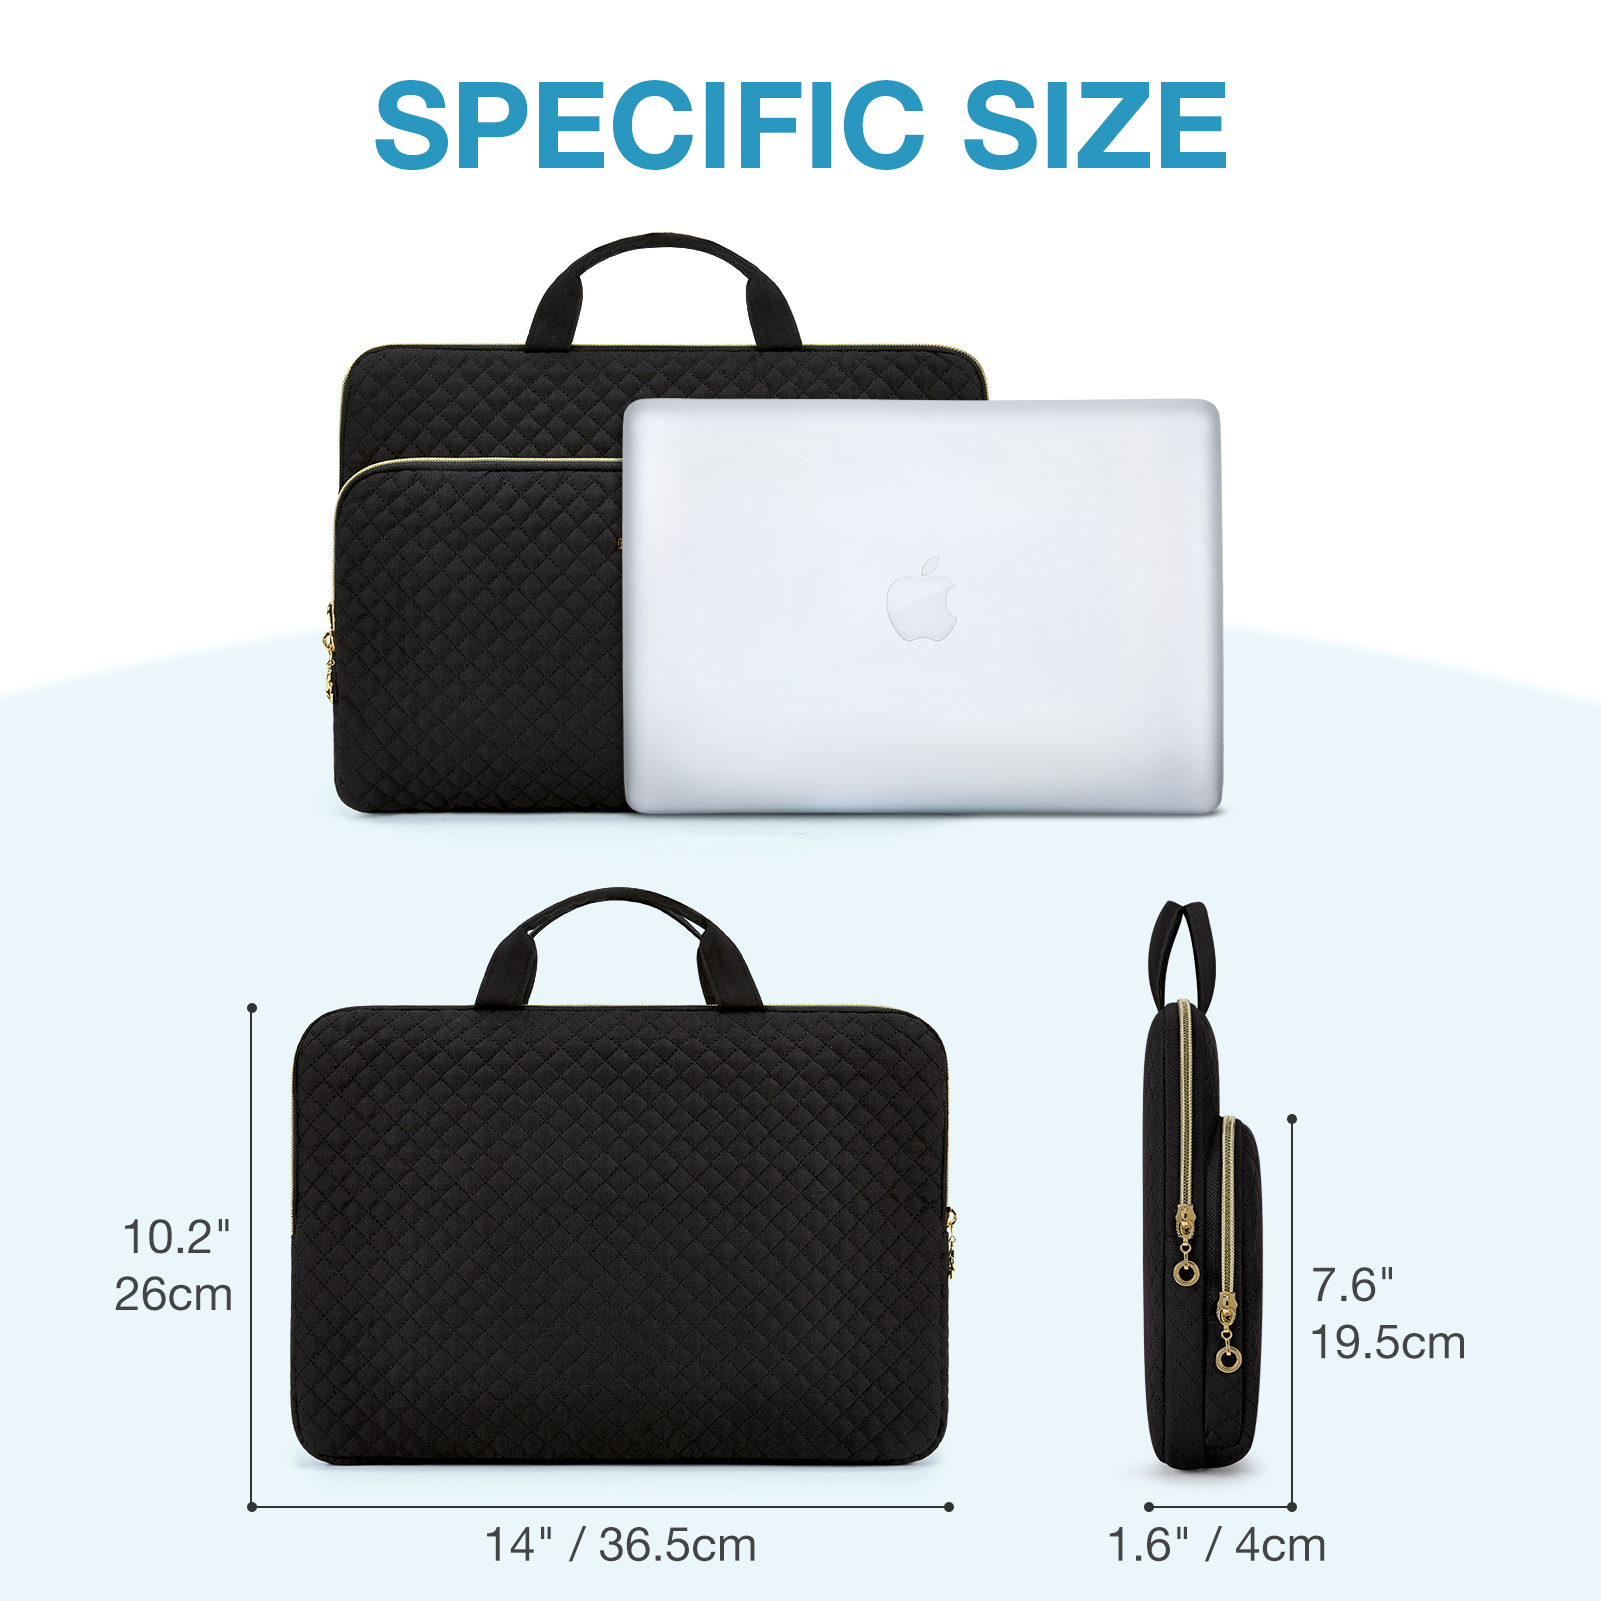 खरीदने के लिए लैपटॉप आस्तीन 15.6 इंच लैपटॉप जेब के साथ ले जाने का मामला,लैपटॉप आस्तीन 15.6 इंच लैपटॉप जेब के साथ ले जाने का मामला दाम,लैपटॉप आस्तीन 15.6 इंच लैपटॉप जेब के साथ ले जाने का मामला ब्रांड,लैपटॉप आस्तीन 15.6 इंच लैपटॉप जेब के साथ ले जाने का मामला मैन्युफैक्चरर्स,लैपटॉप आस्तीन 15.6 इंच लैपटॉप जेब के साथ ले जाने का मामला उद्धृत मूल्य,लैपटॉप आस्तीन 15.6 इंच लैपटॉप जेब के साथ ले जाने का मामला कंपनी,